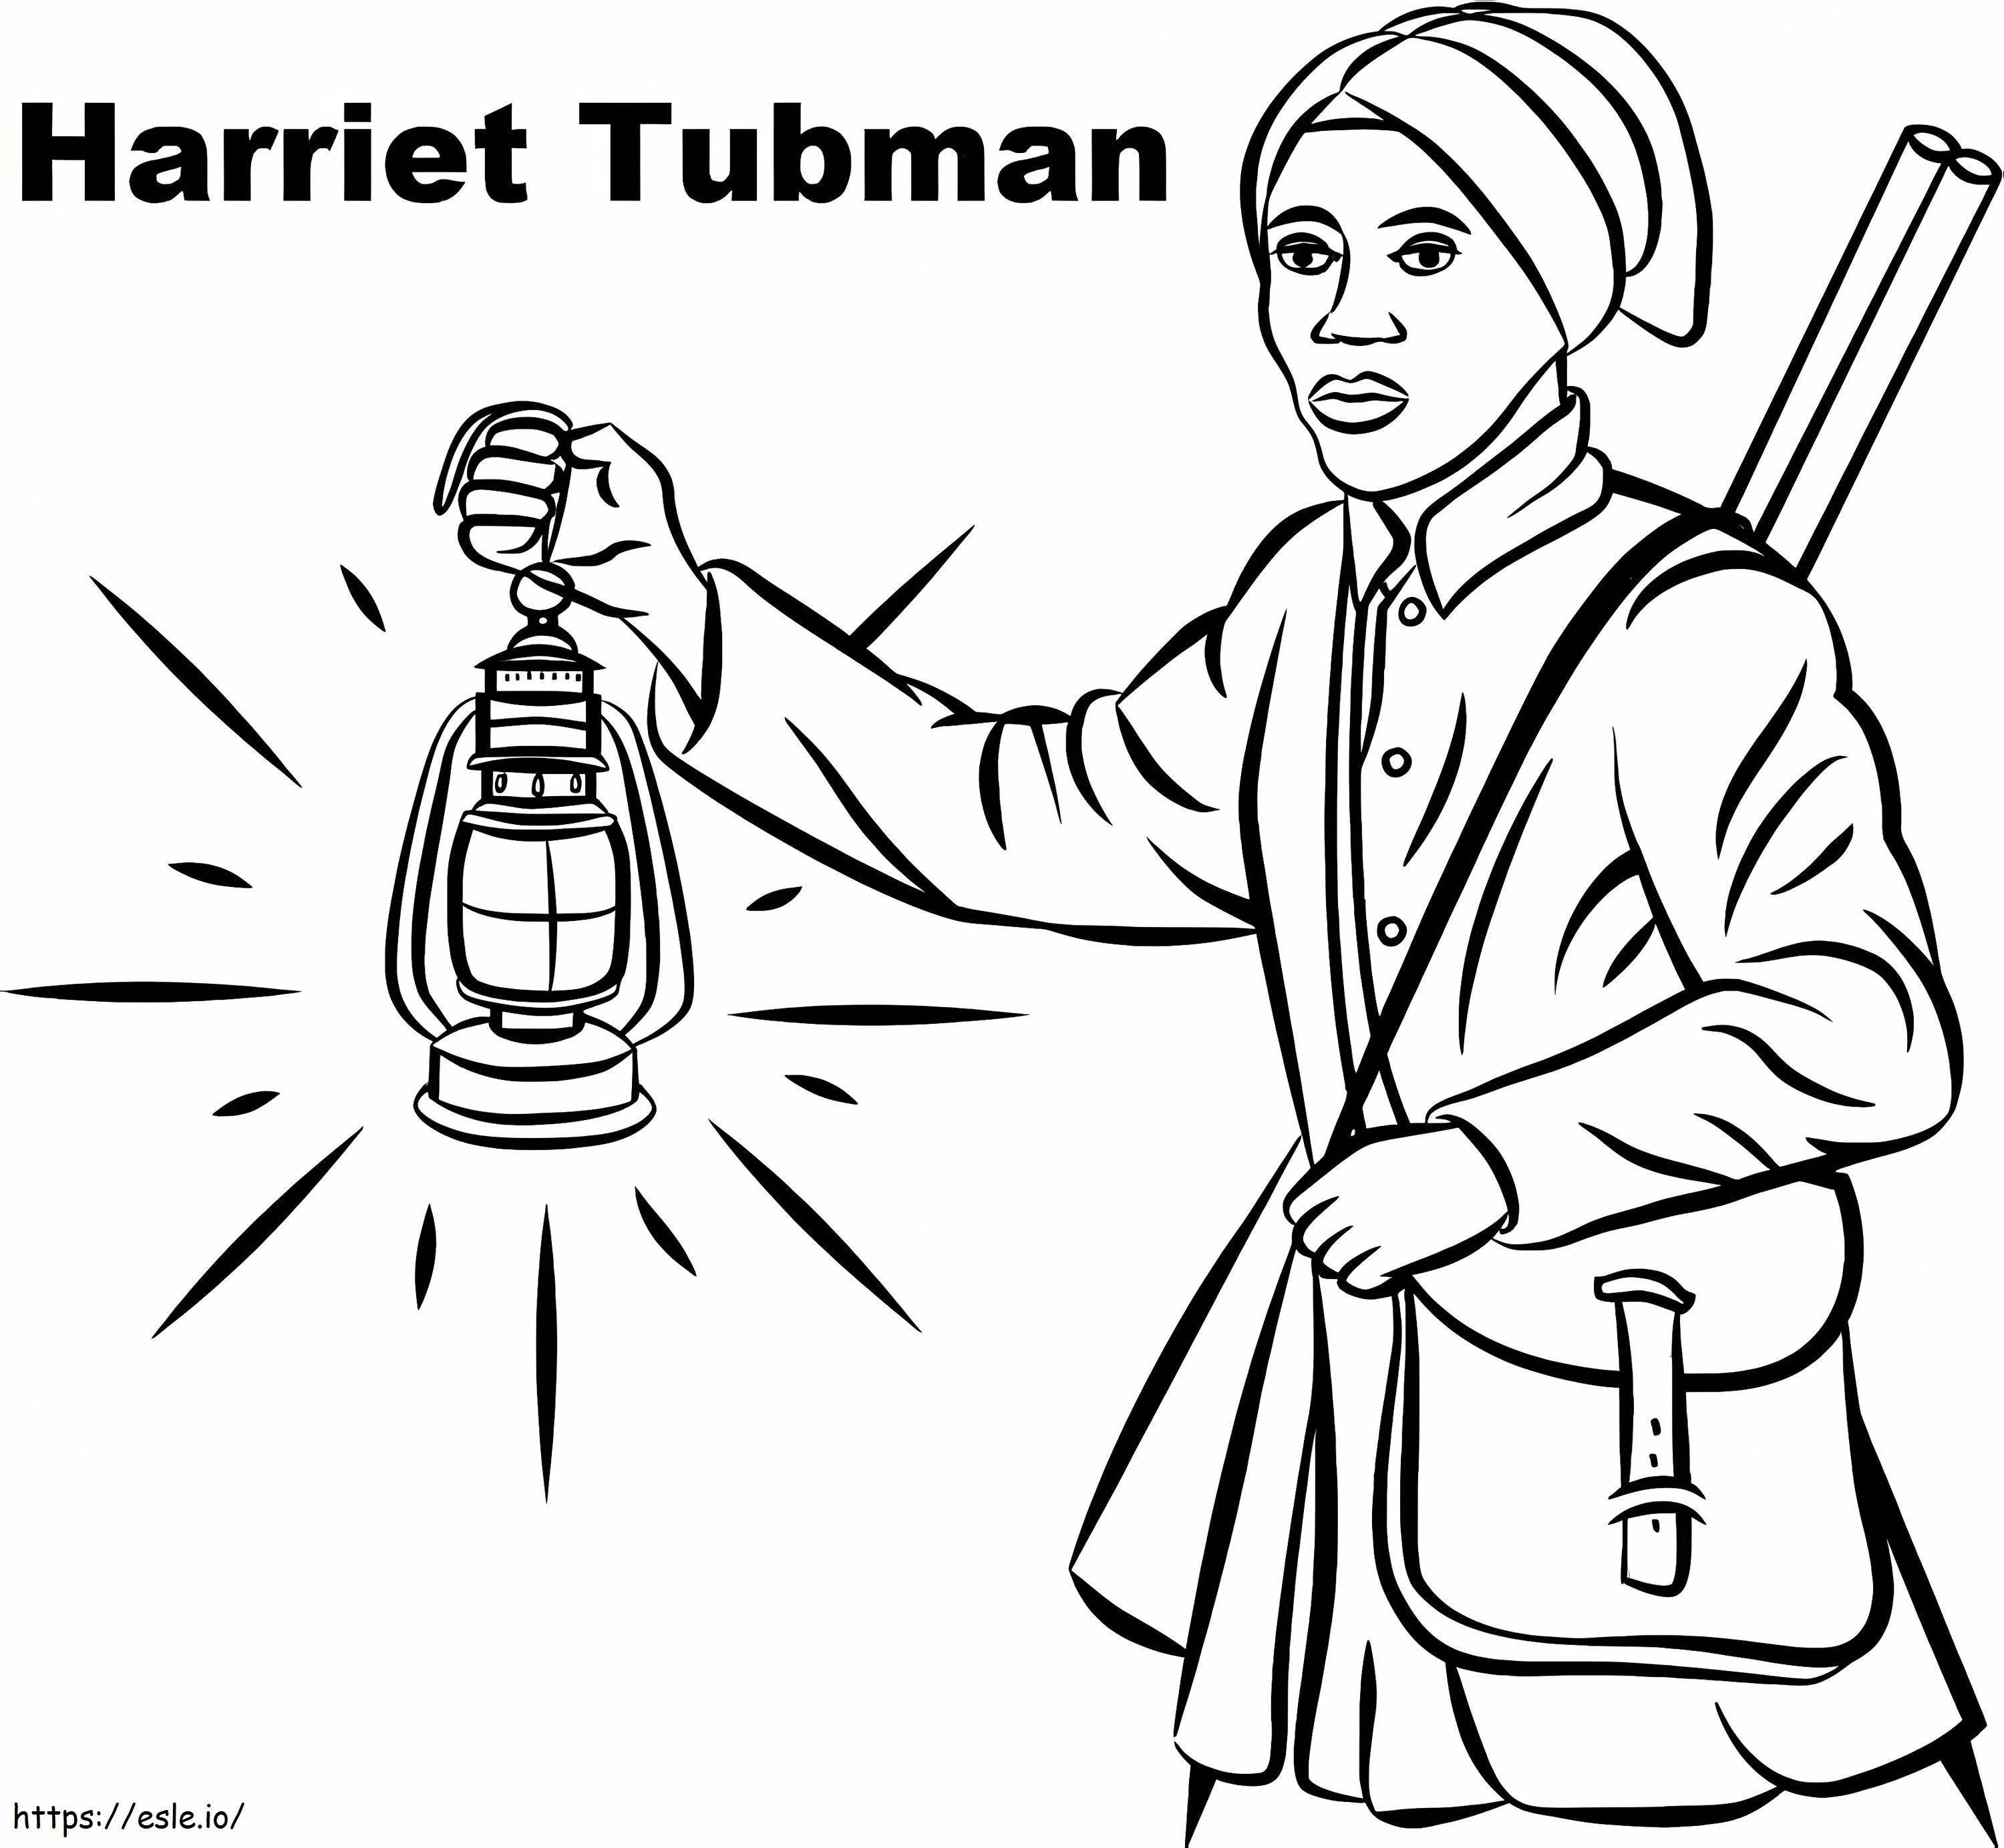 Harriet Tubman 6 ausmalbilder